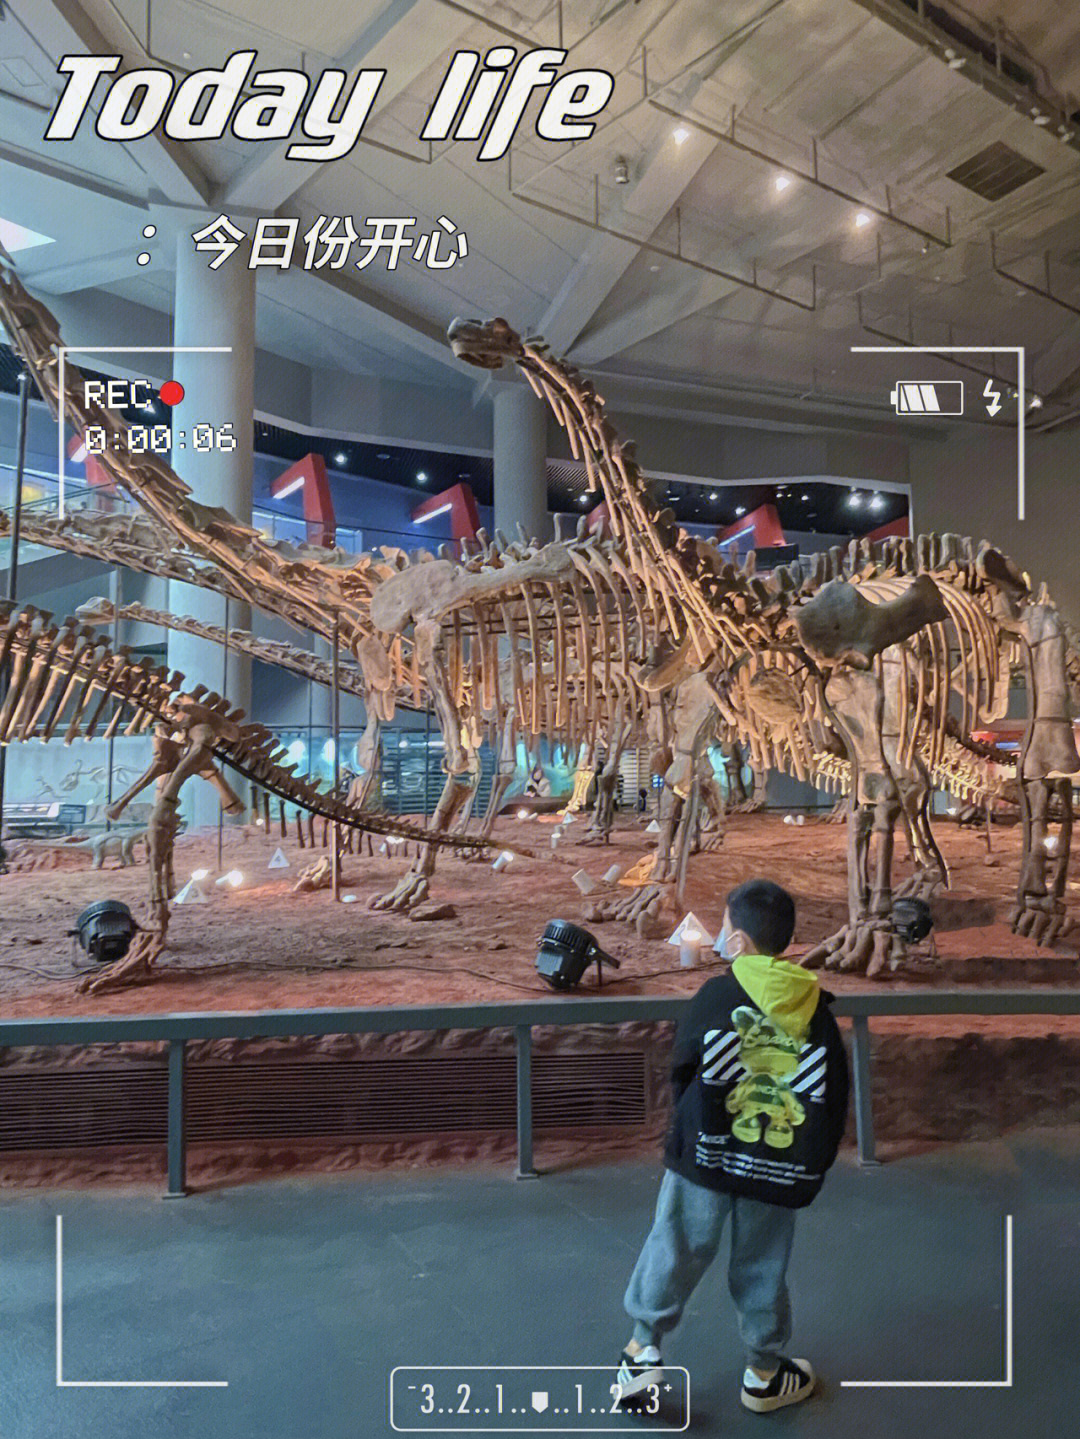 免费遛娃好去处7515重庆自然博物馆03恐龙世界